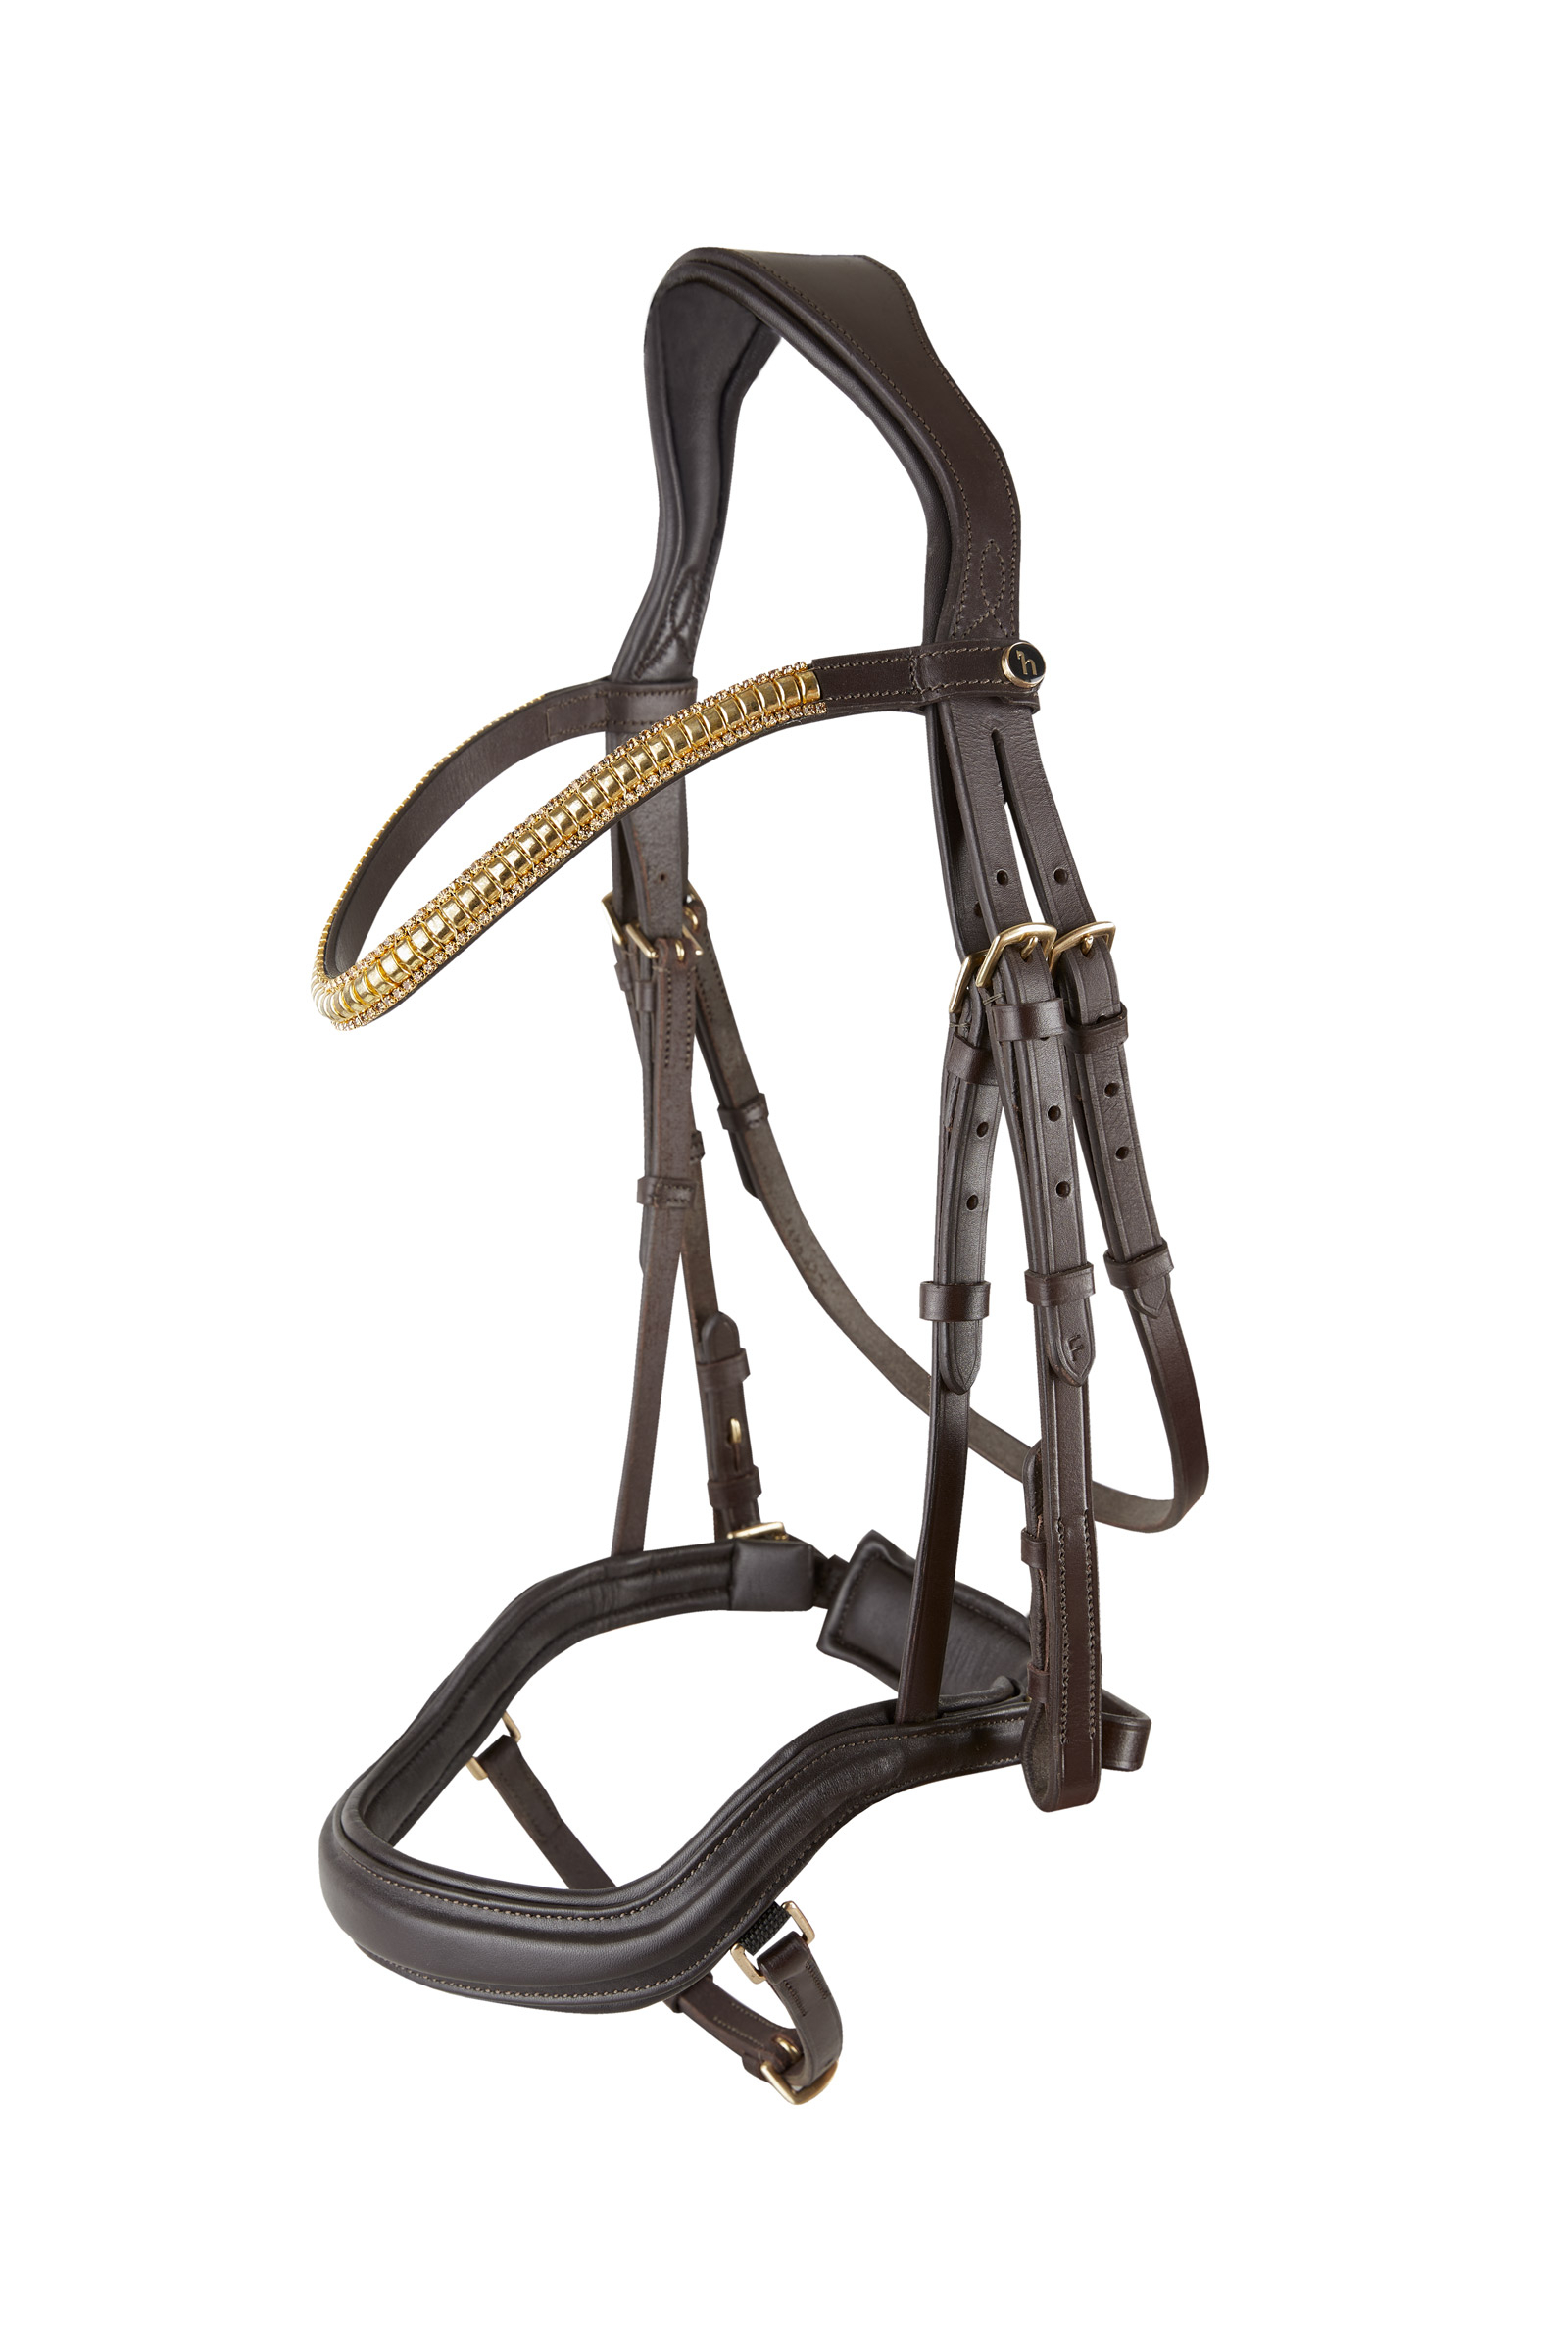 ZANGAO Collier Durable Tête de Cheval Halter Accessoires équitation  équestre Les Planches Cheval Bridle for l'équipement Course de Chevaux  (Color : Size L Black) : : Animalerie